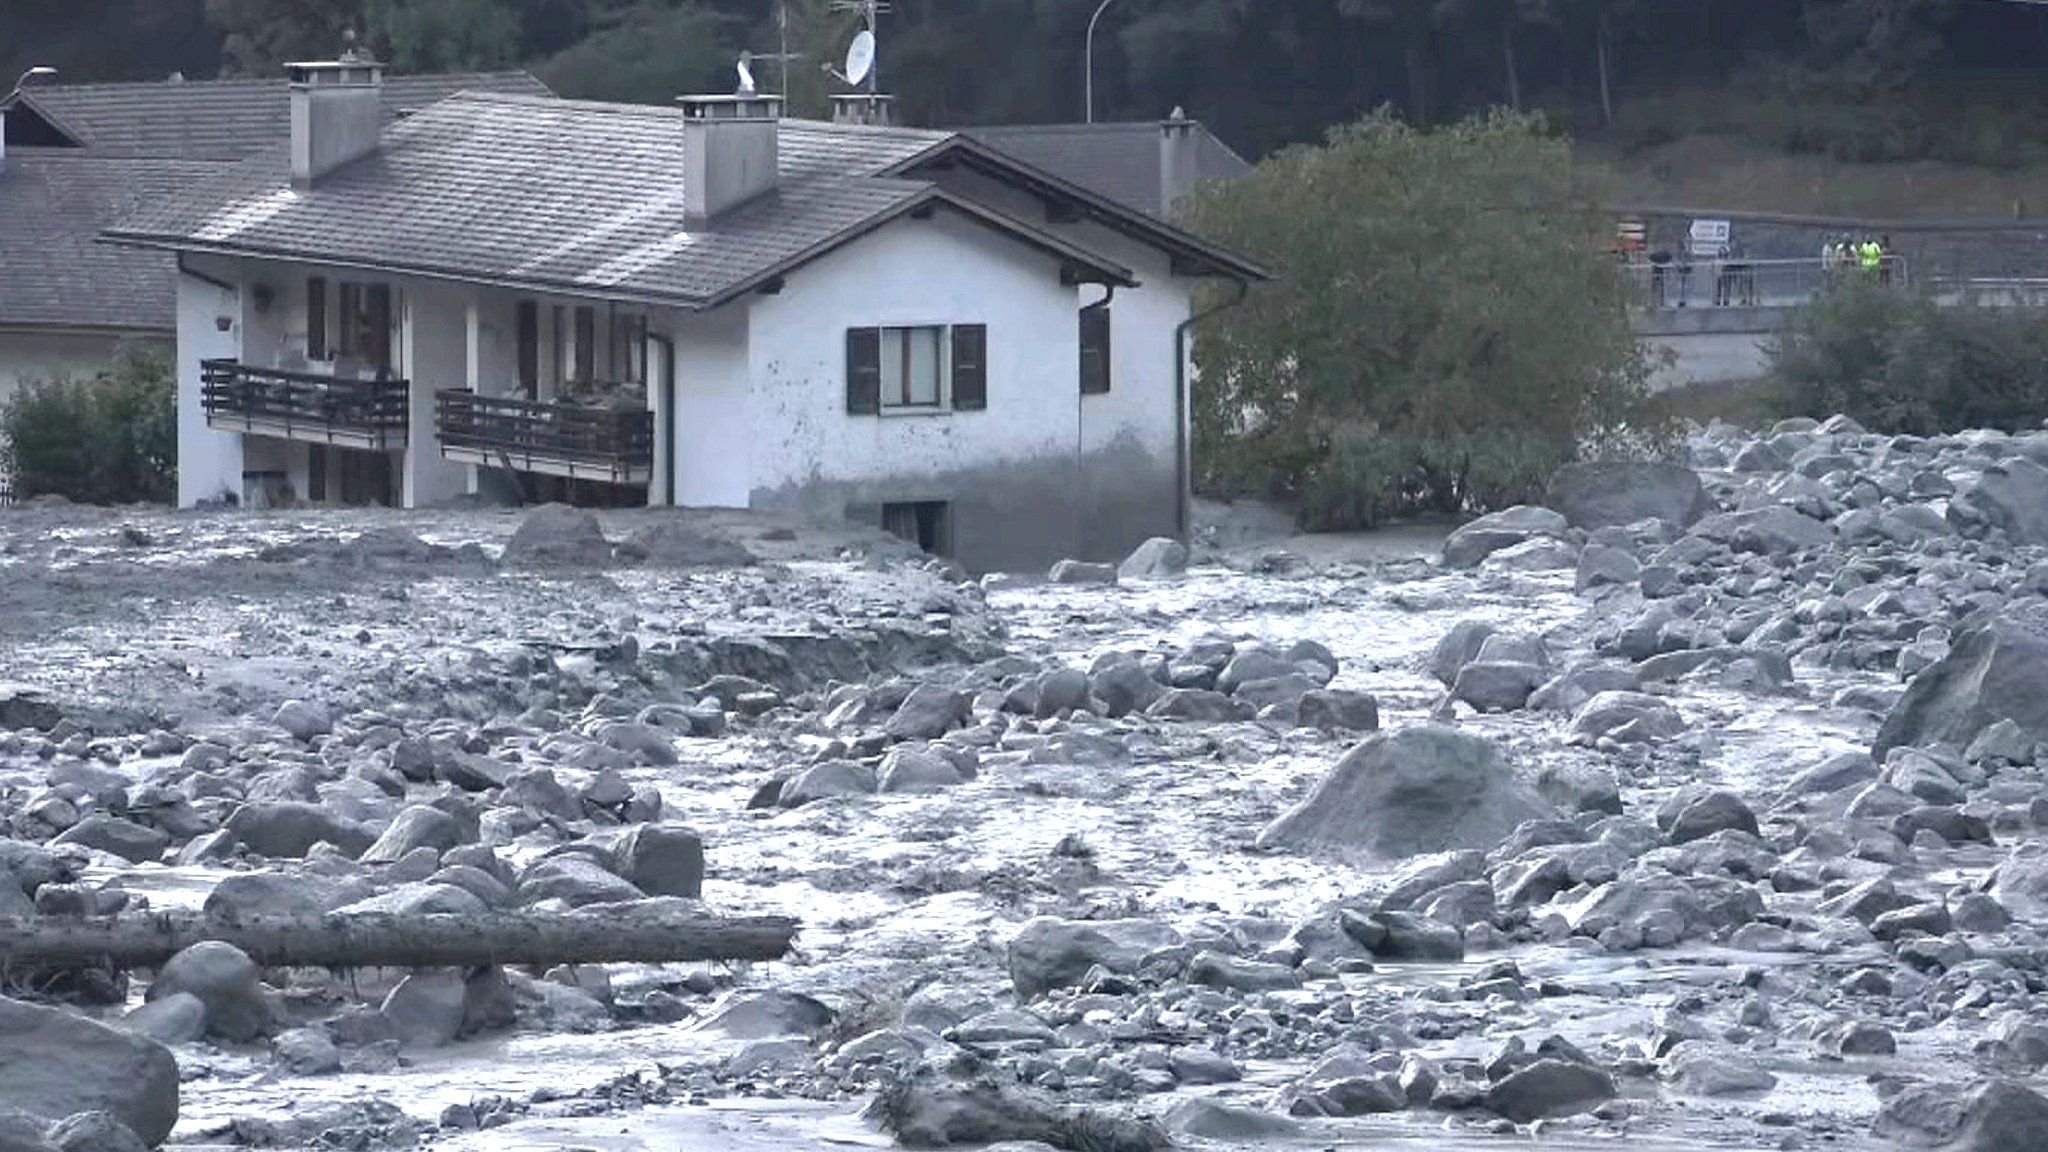 Village of Bondo in Switzerland, August 23, 2017 after a landslide struck it